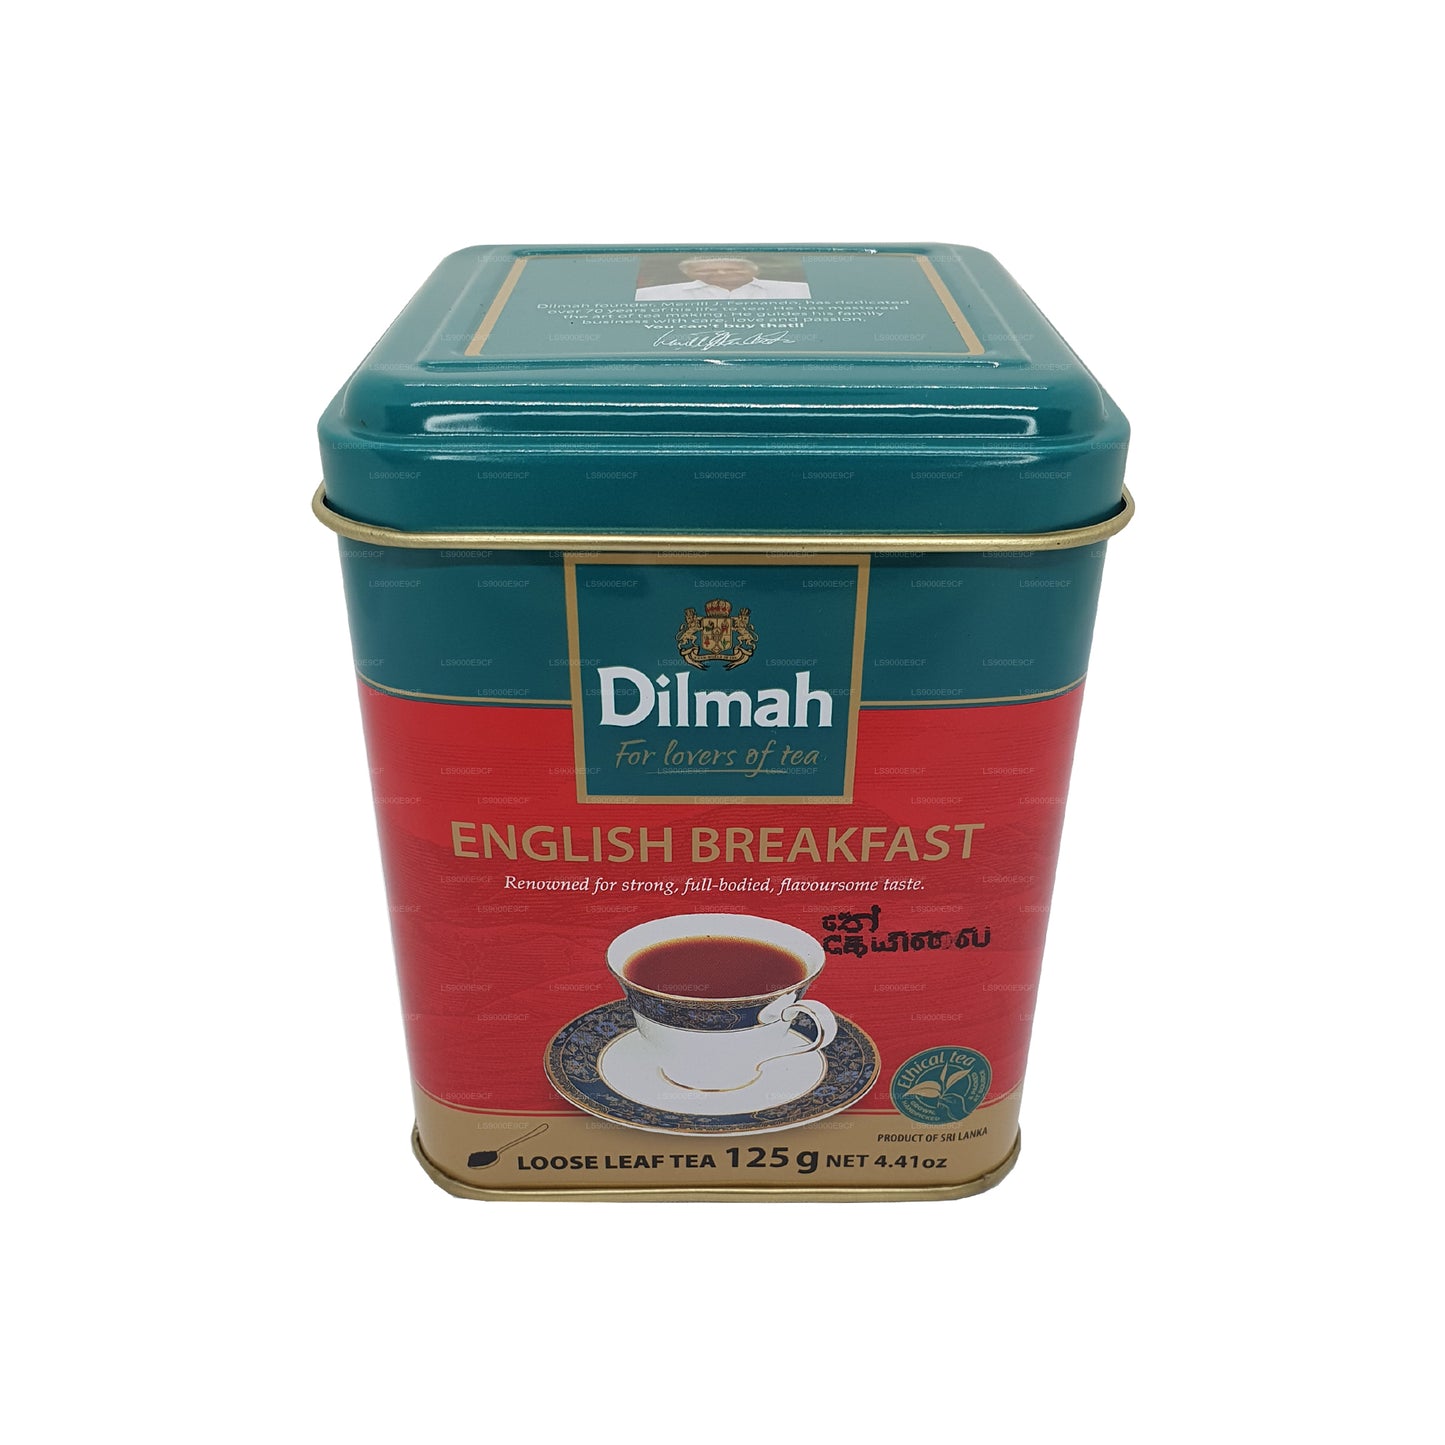 Dilmah anglický snídaňový sypaný listový čaj (125g)